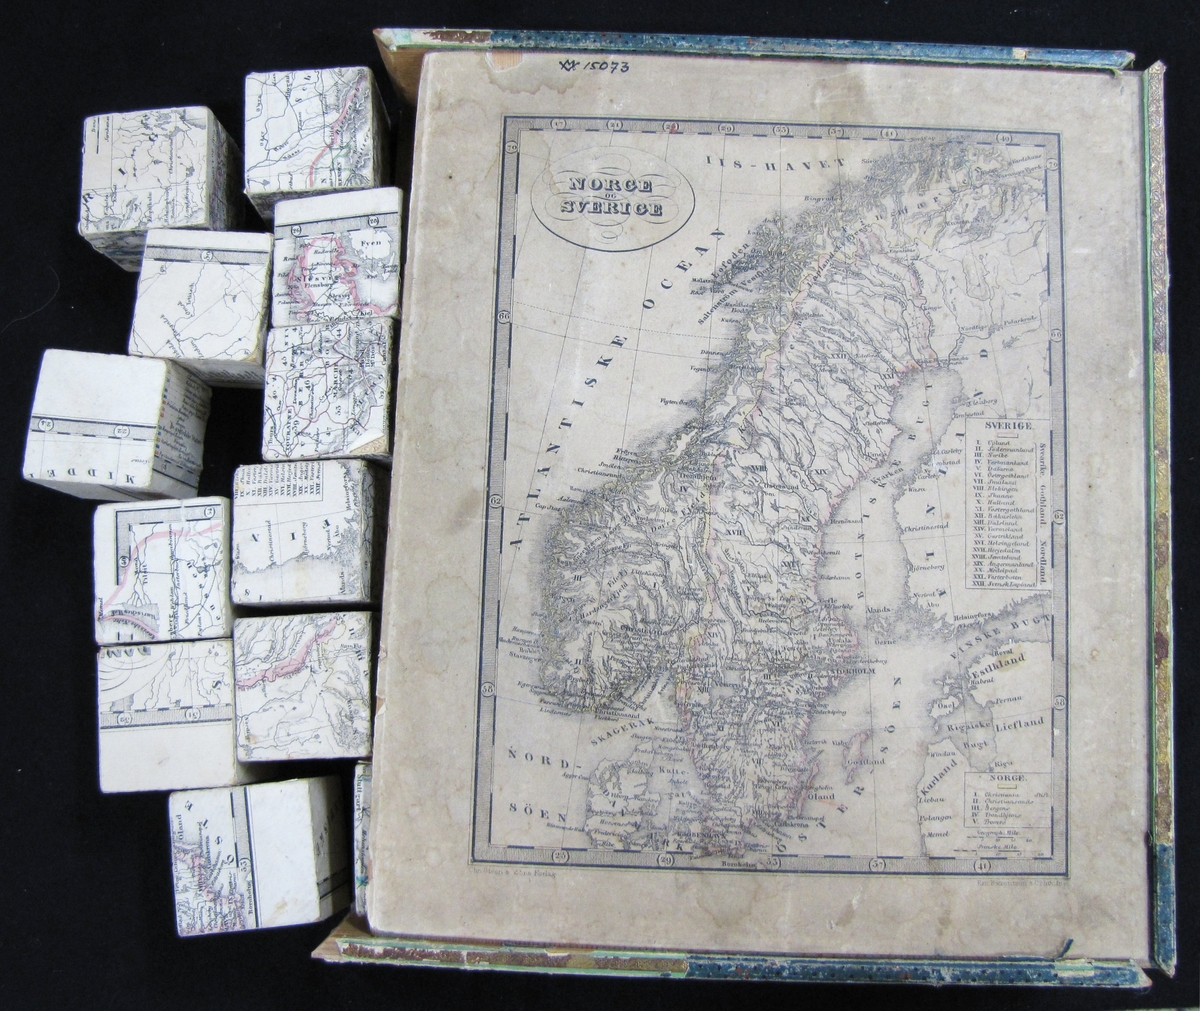 Spel som består av klossar, 42 mm i kvadrat, 30 st, med kartblad. Kartan är över Norge och Sverige.